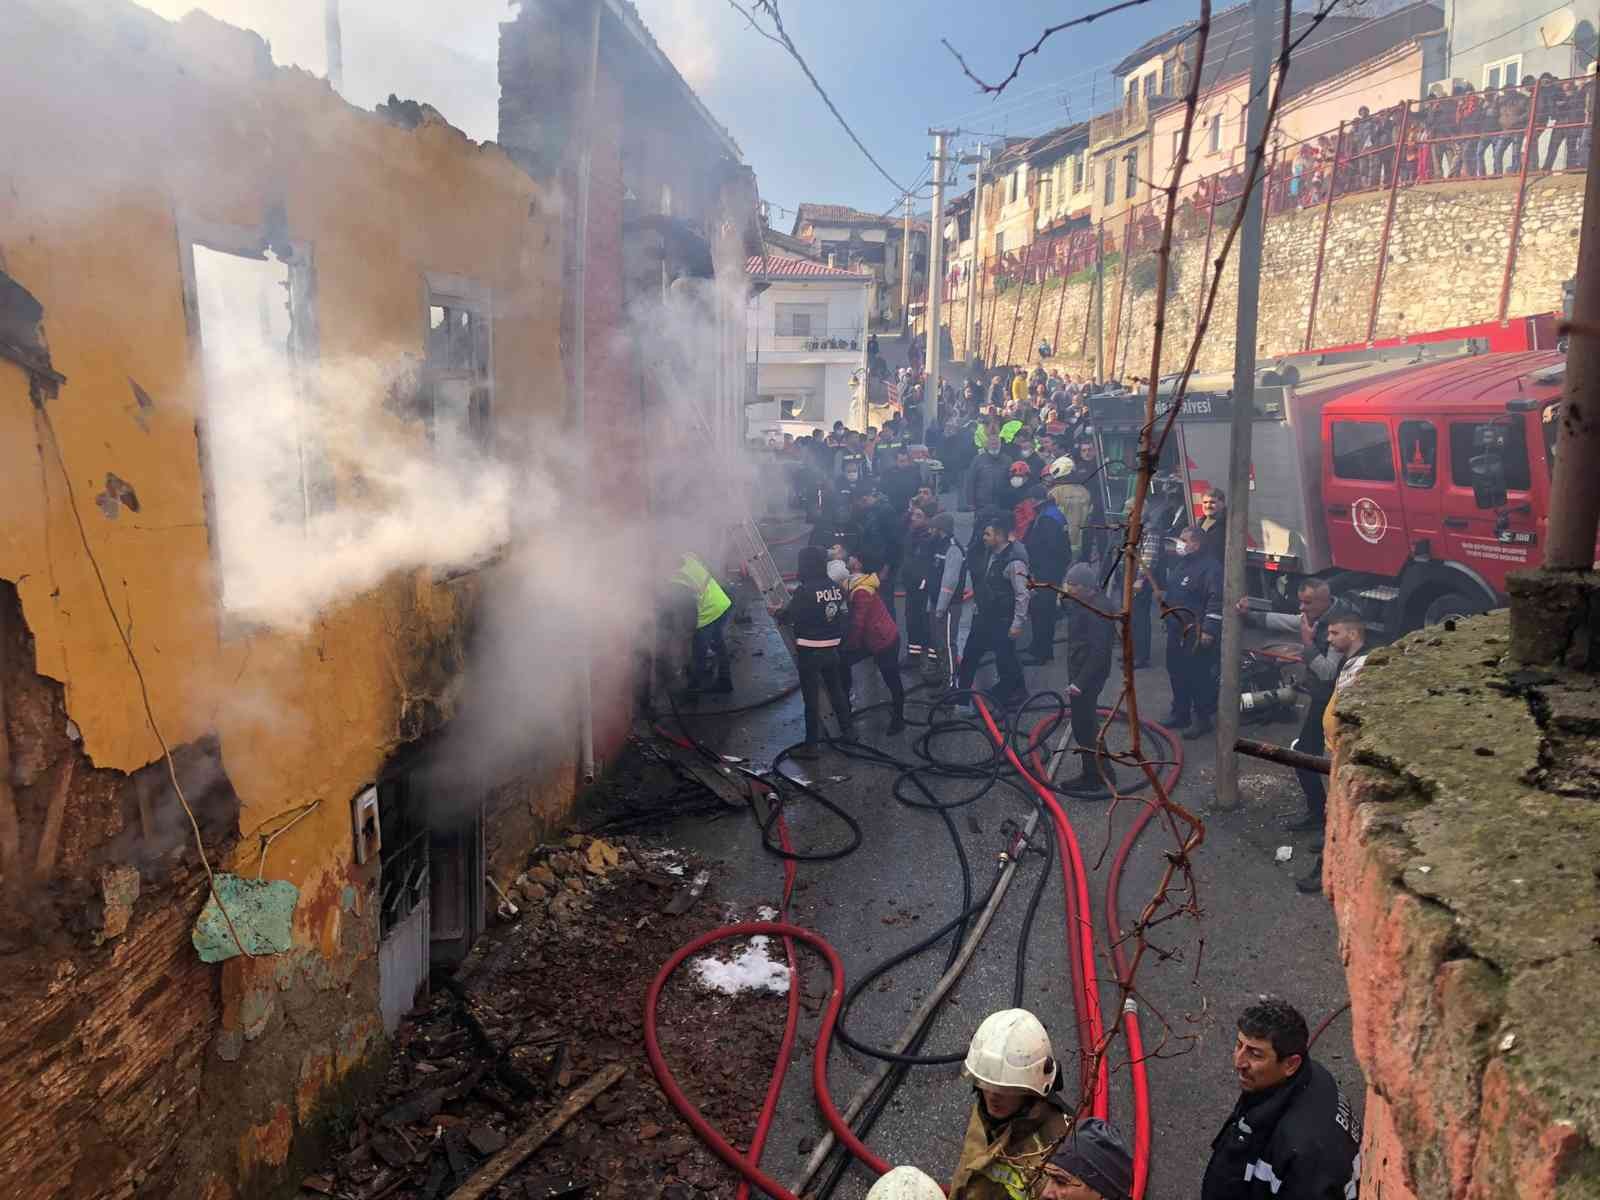 İzmir’de yangın dehşeti: 3 çocuk hayatını kaybetti #izmir